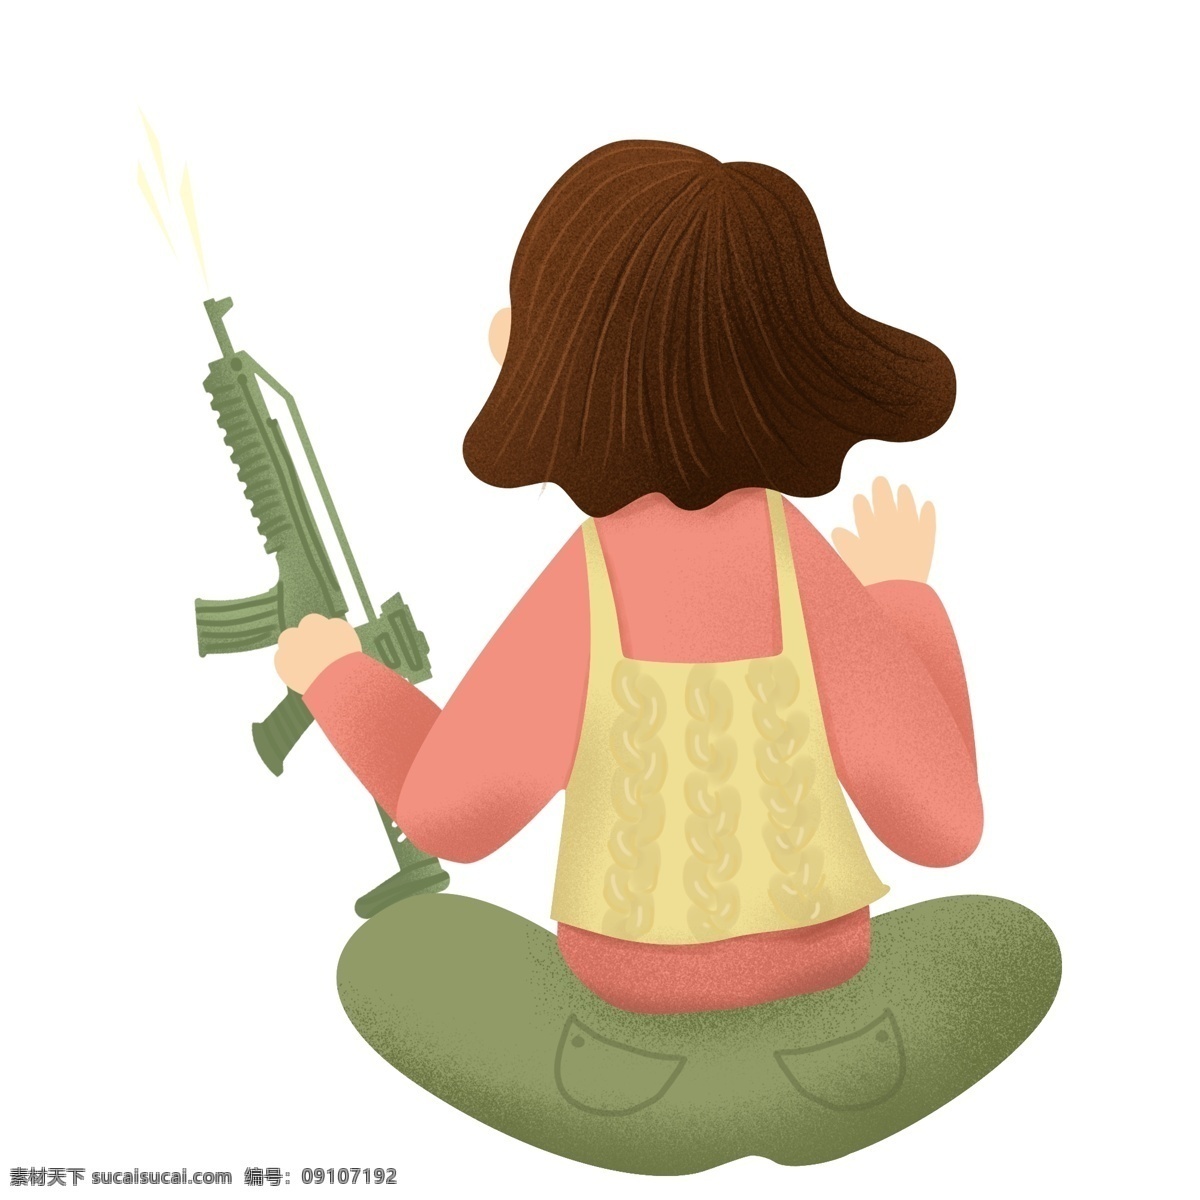 彩绘 玩 吃 鸡 游戏 女孩 插画 商用 元素 少女 手枪 吃鸡 人物背影设计